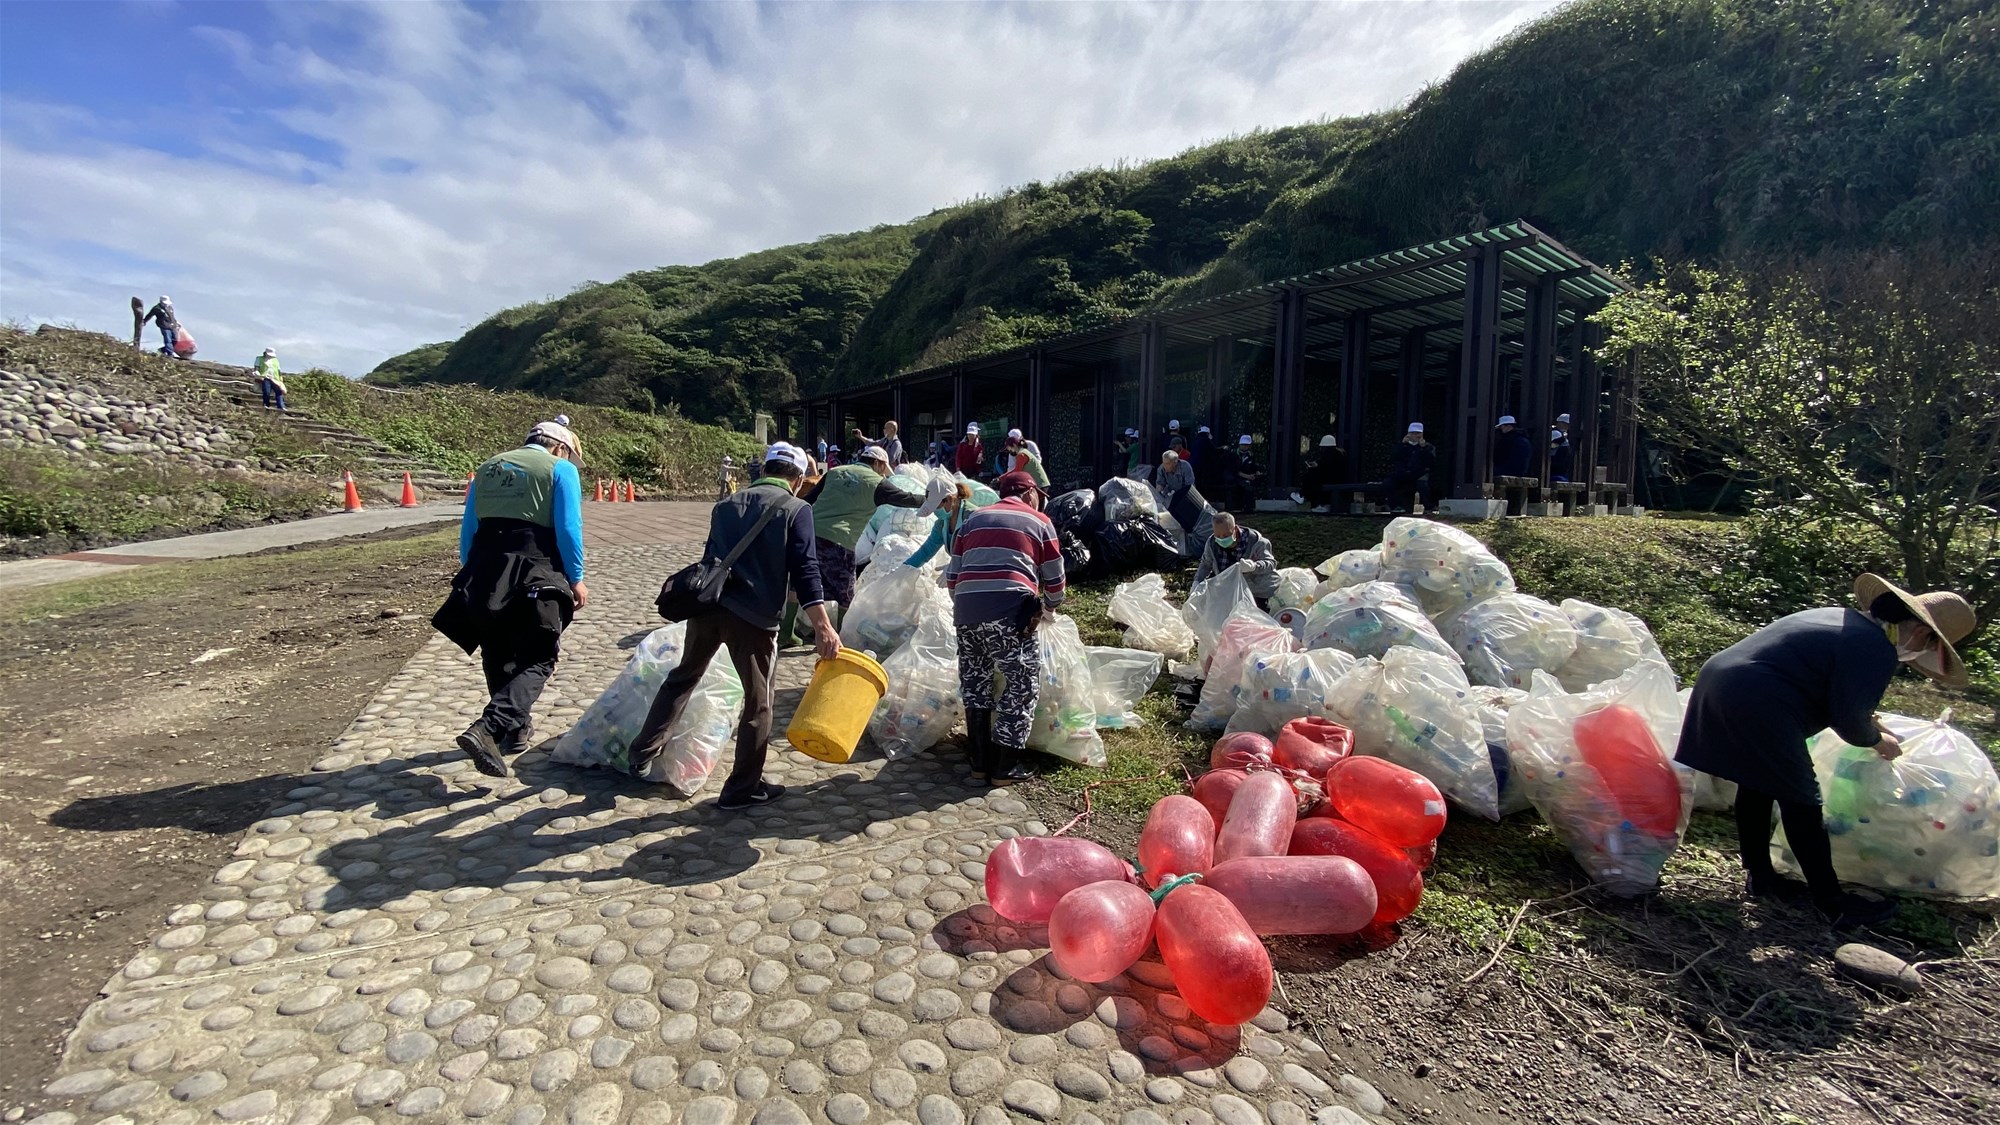 持続可能な生態保全 2023 亀山島のビーチ清掃活動 ~ 3 月 1 日に亀山島のエコツーリズムが島に開かれます